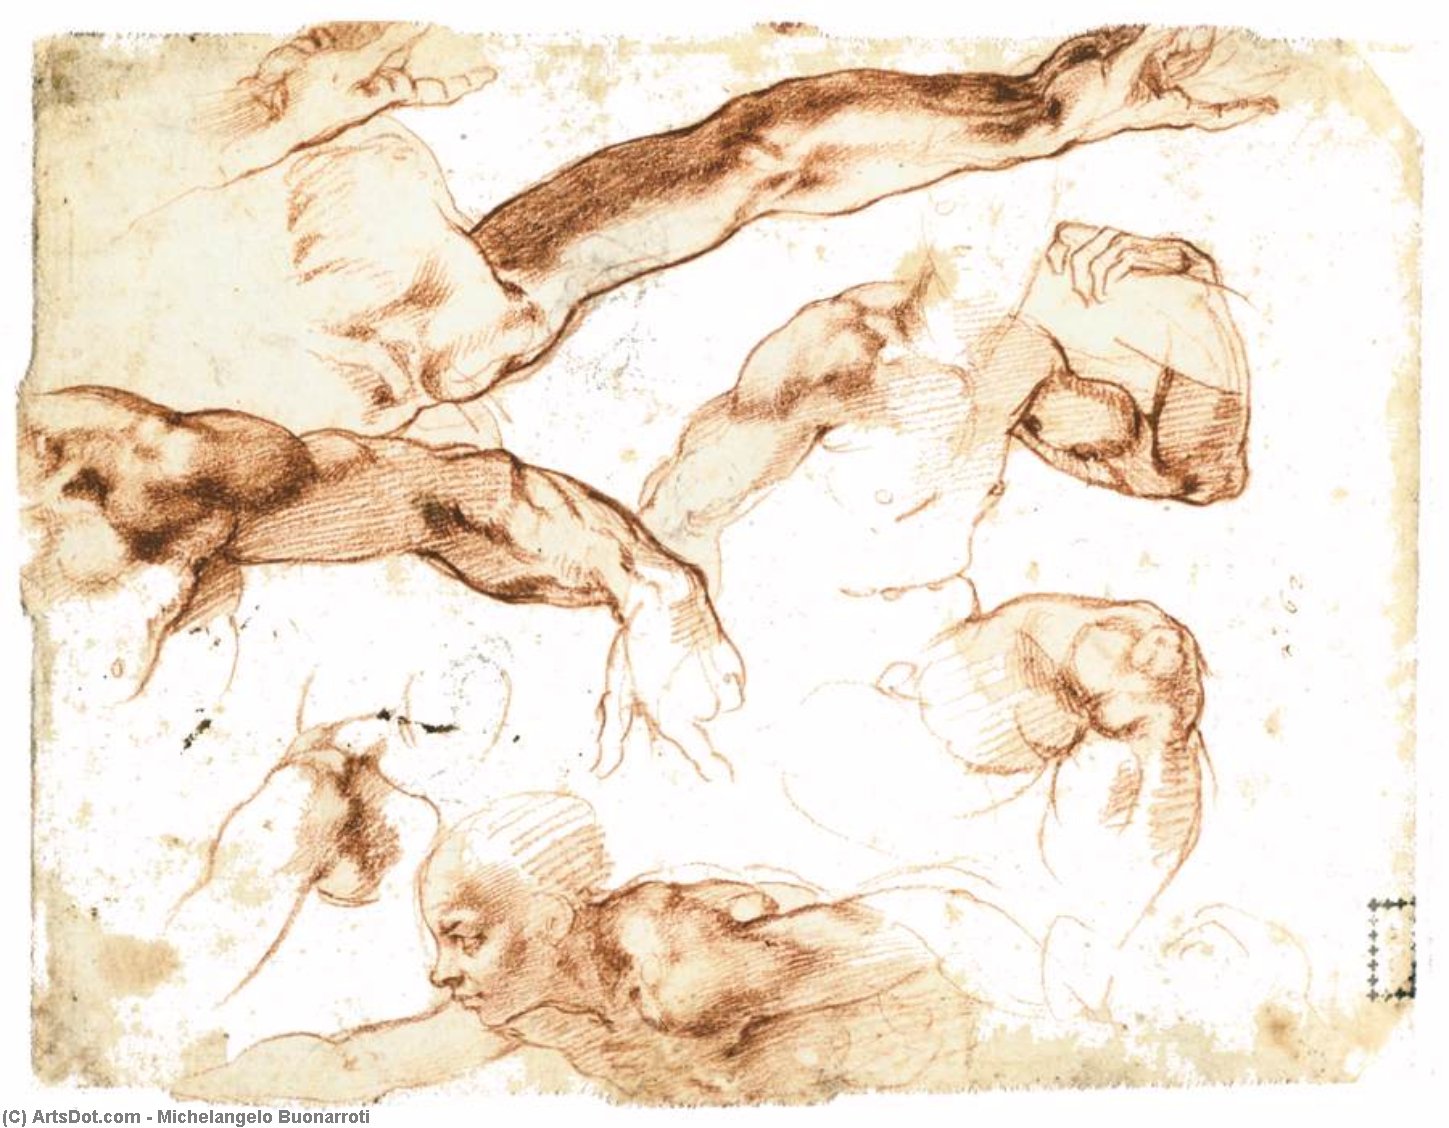 WikiOO.org - Enciklopedija likovnih umjetnosti - Slikarstvo, umjetnička djela Michelangelo Buonarroti - Various Studies of Figures and Limbs (verso)